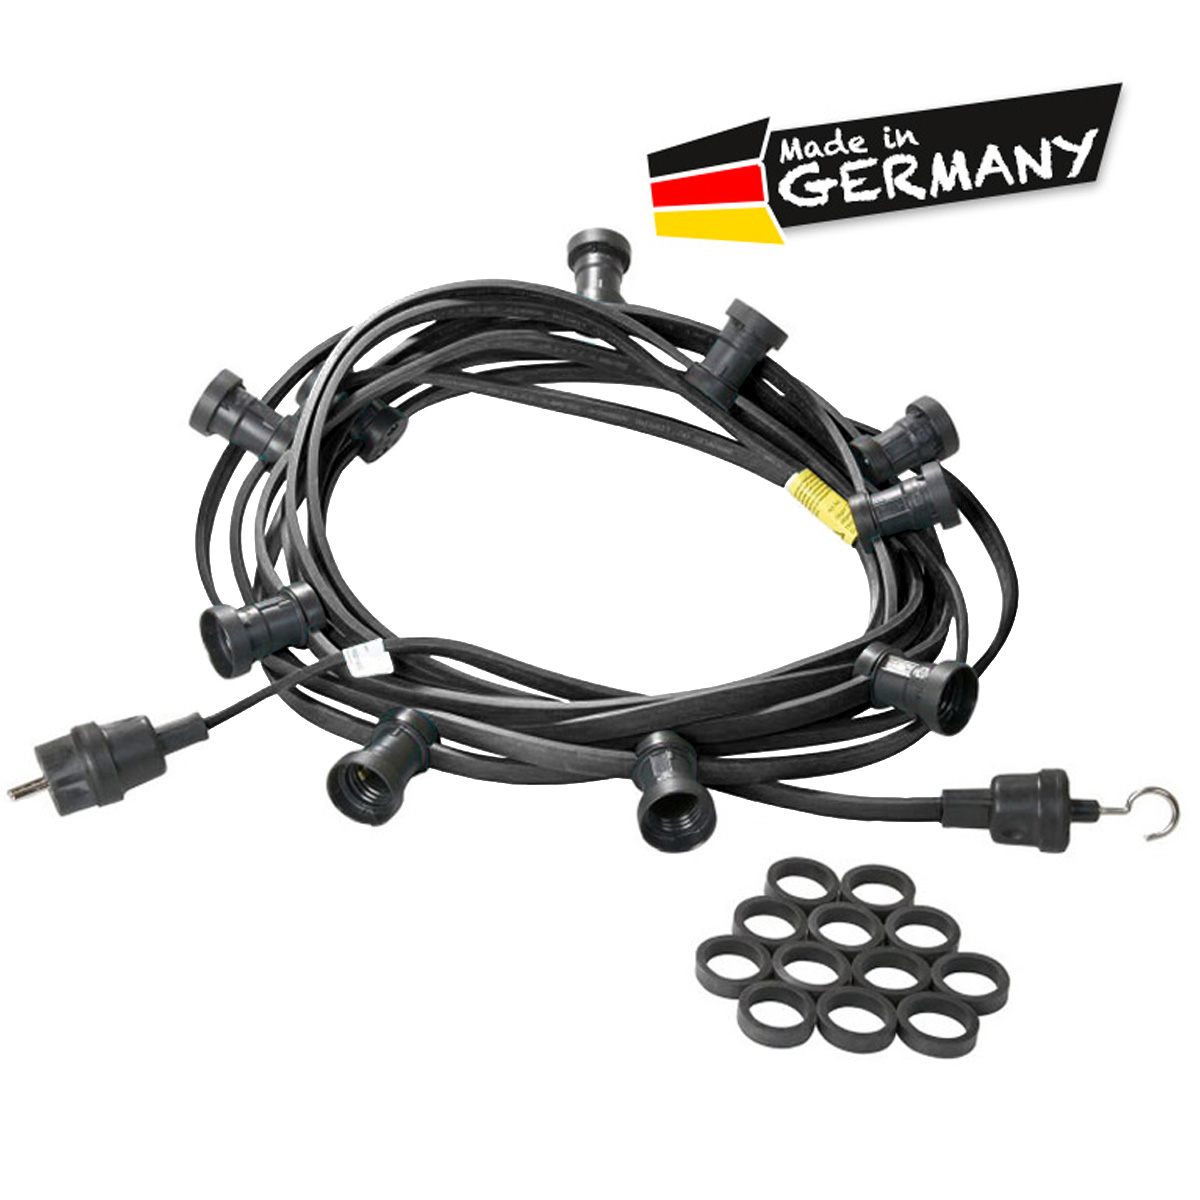 Illu-/Partylichterkette schwarz 40m | Außenlichterkette | Made in Germany | 60 x E27 Schraubfassung